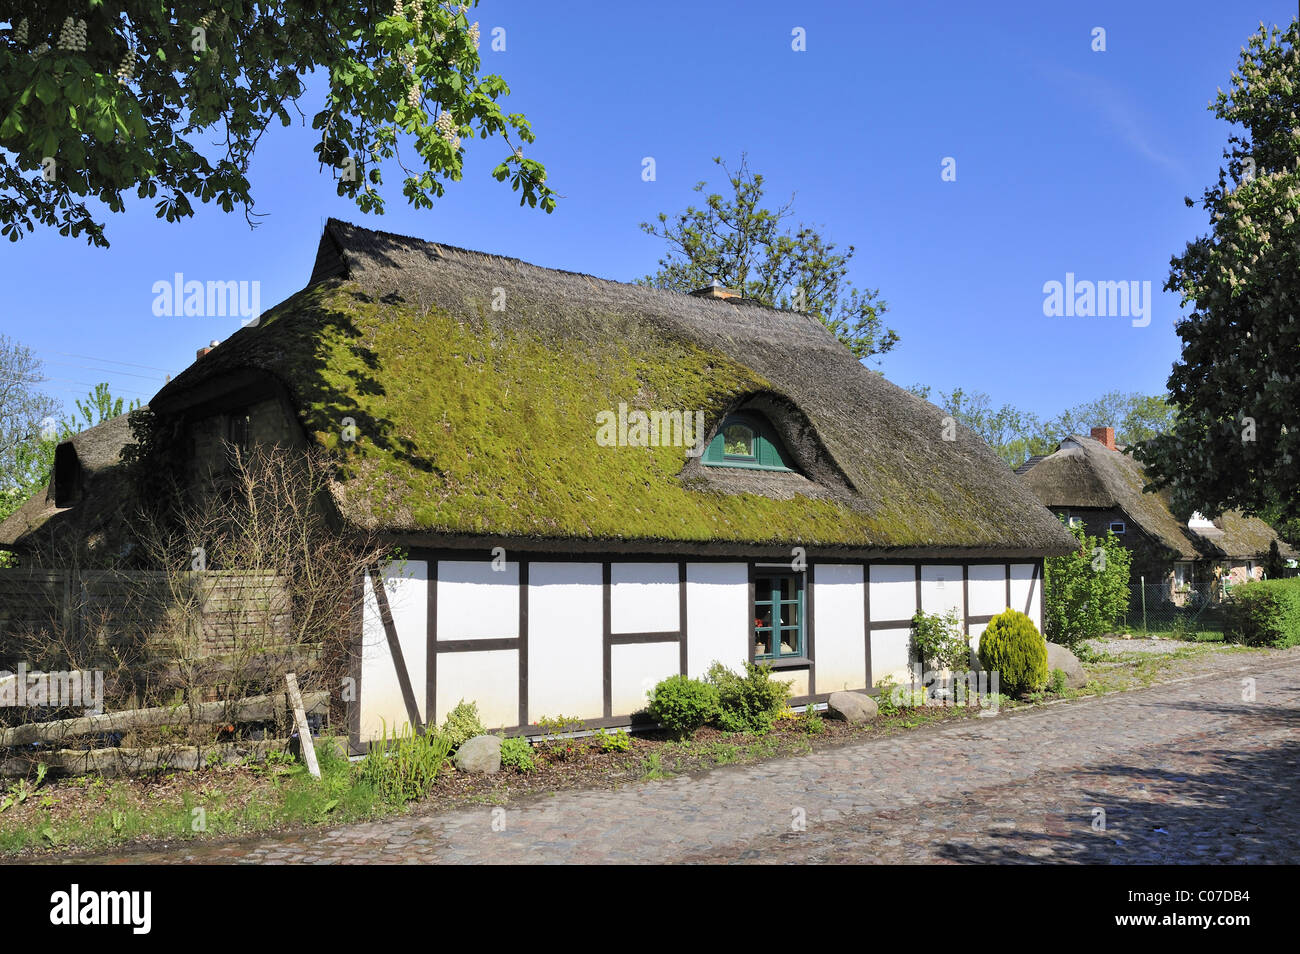 Traditionellen niederdeutschen gebaute Halle Haus in einem Dorf Straße in Sagard, Insel Rügen, Mecklenburg-Vorpommern Stockfoto